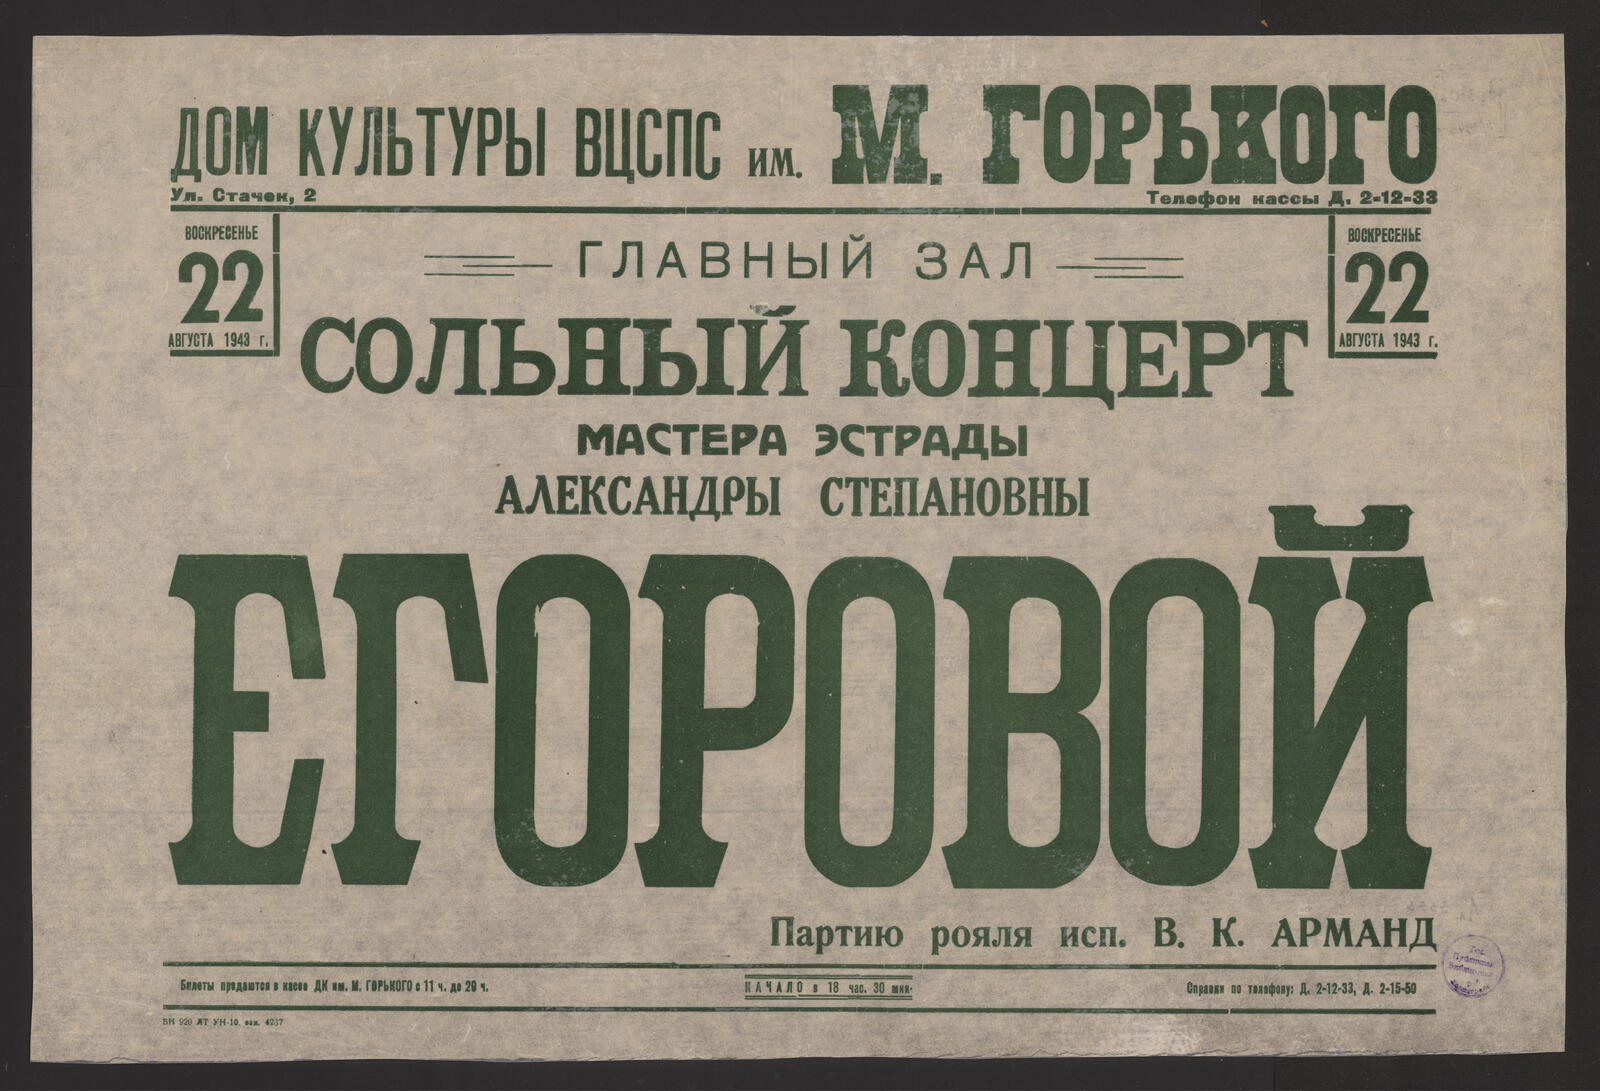 Изображение Сольный концерт мастера эстрады Александры Степановны Егоровой, воскресенье 22 августа 1943 г.